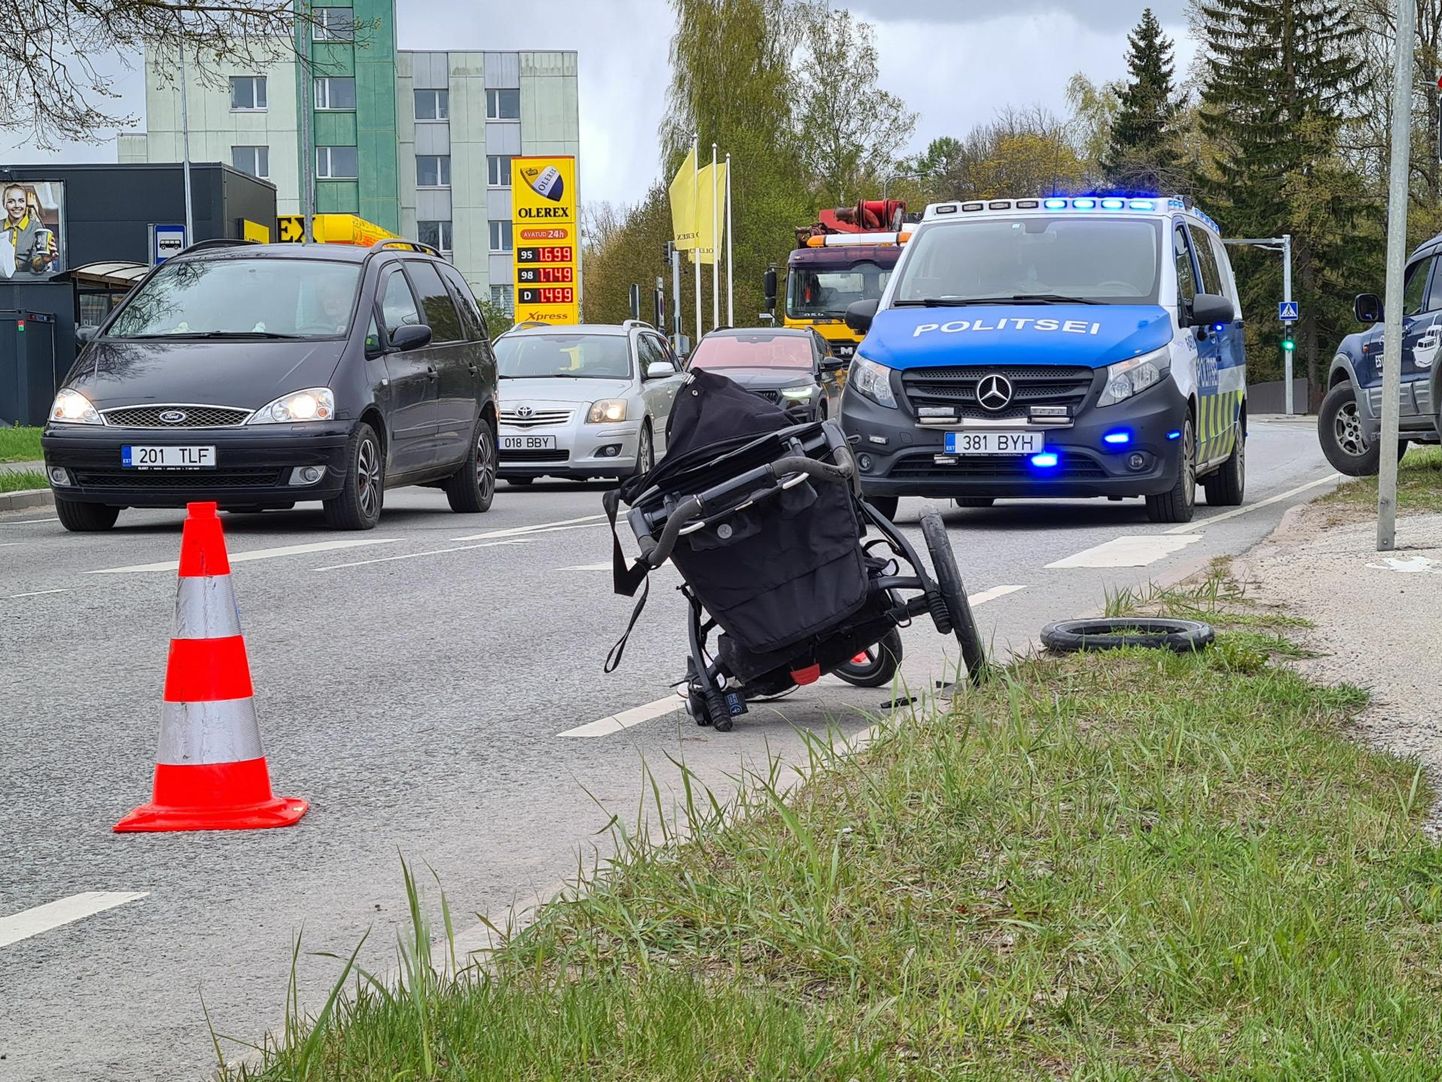 Eile pärastlõunal Aruküla teel Salvesti tehase juures juhtunud õnnetuses said viga naine ja kärus olnud alla aastane laps.

2 x Jürgen Puistaja